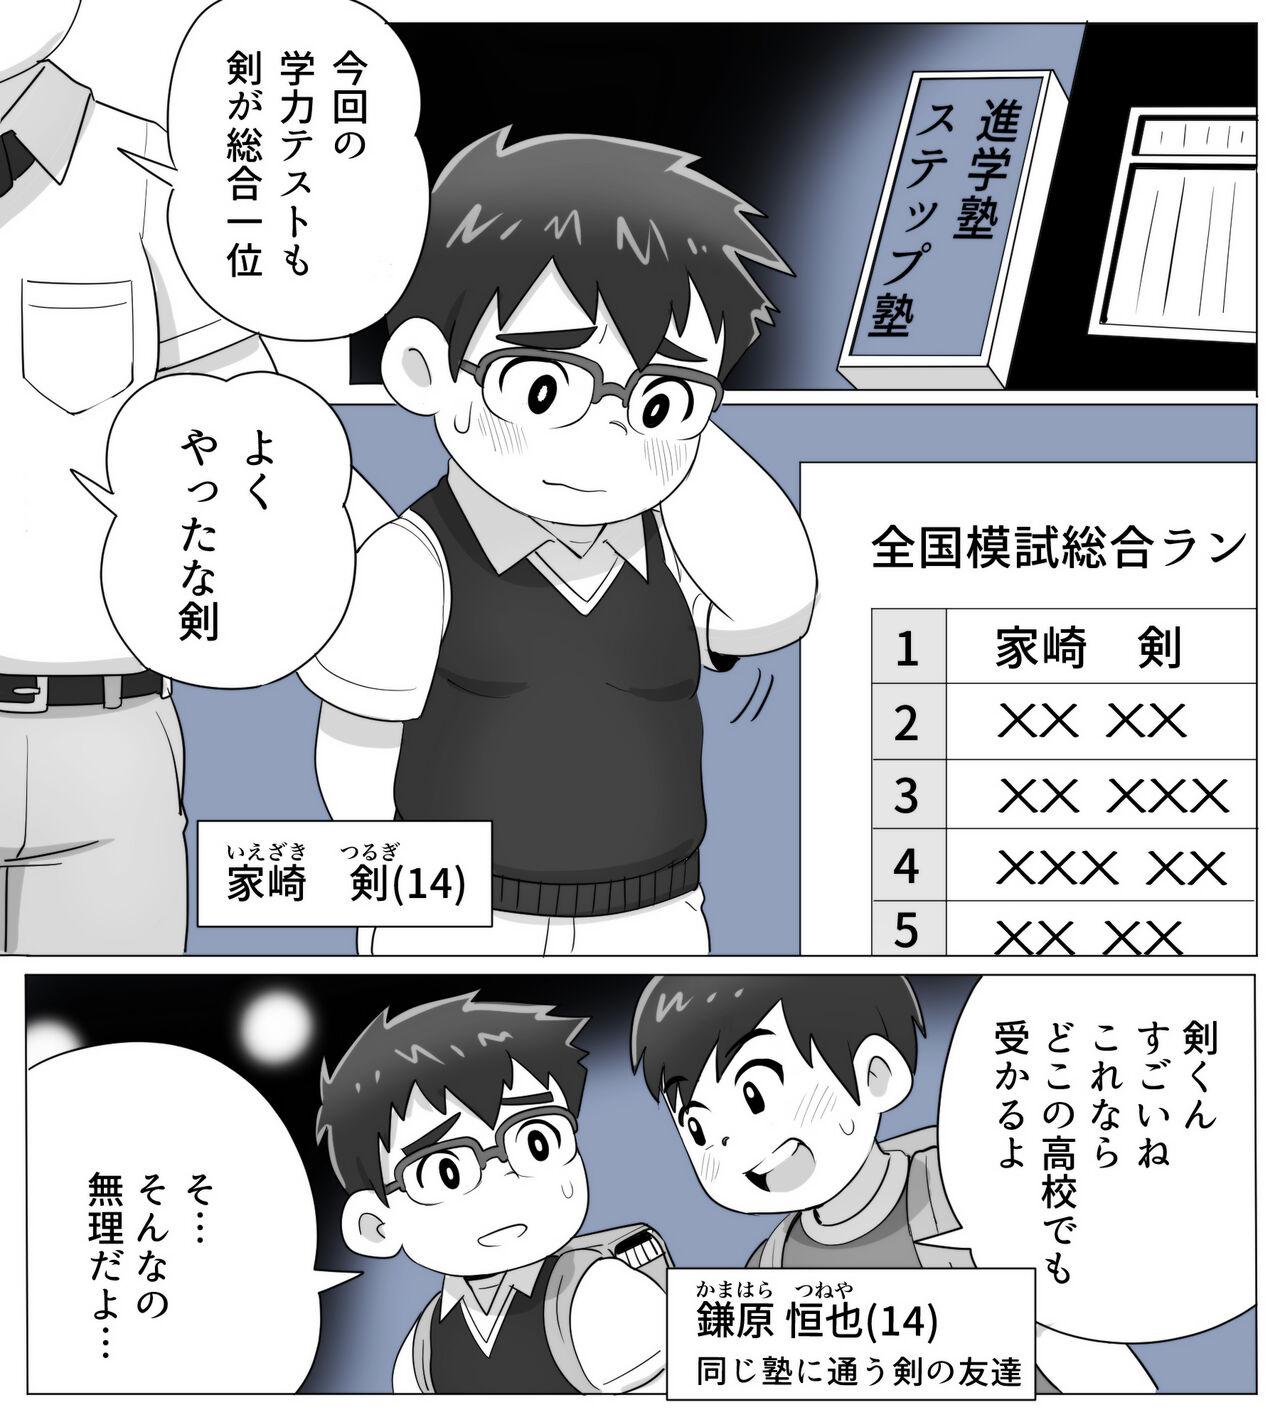 obeccho - 短編漫画「施術にようこそ！剣くん編」 2